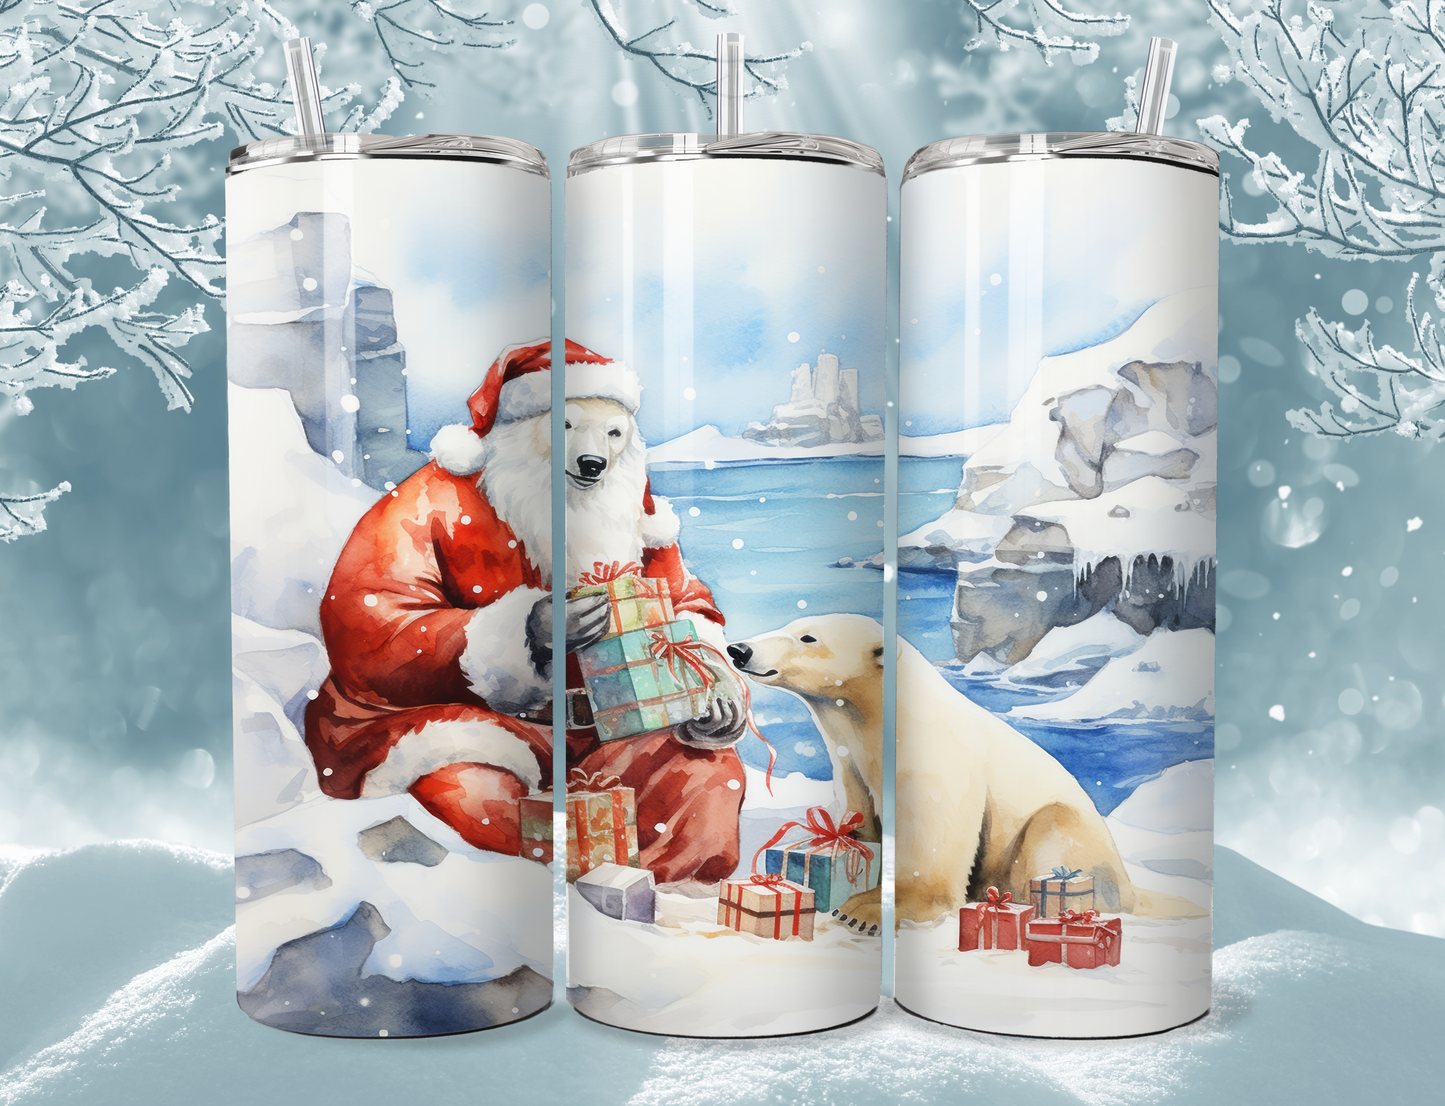 Polar Bear as Santa with Presents